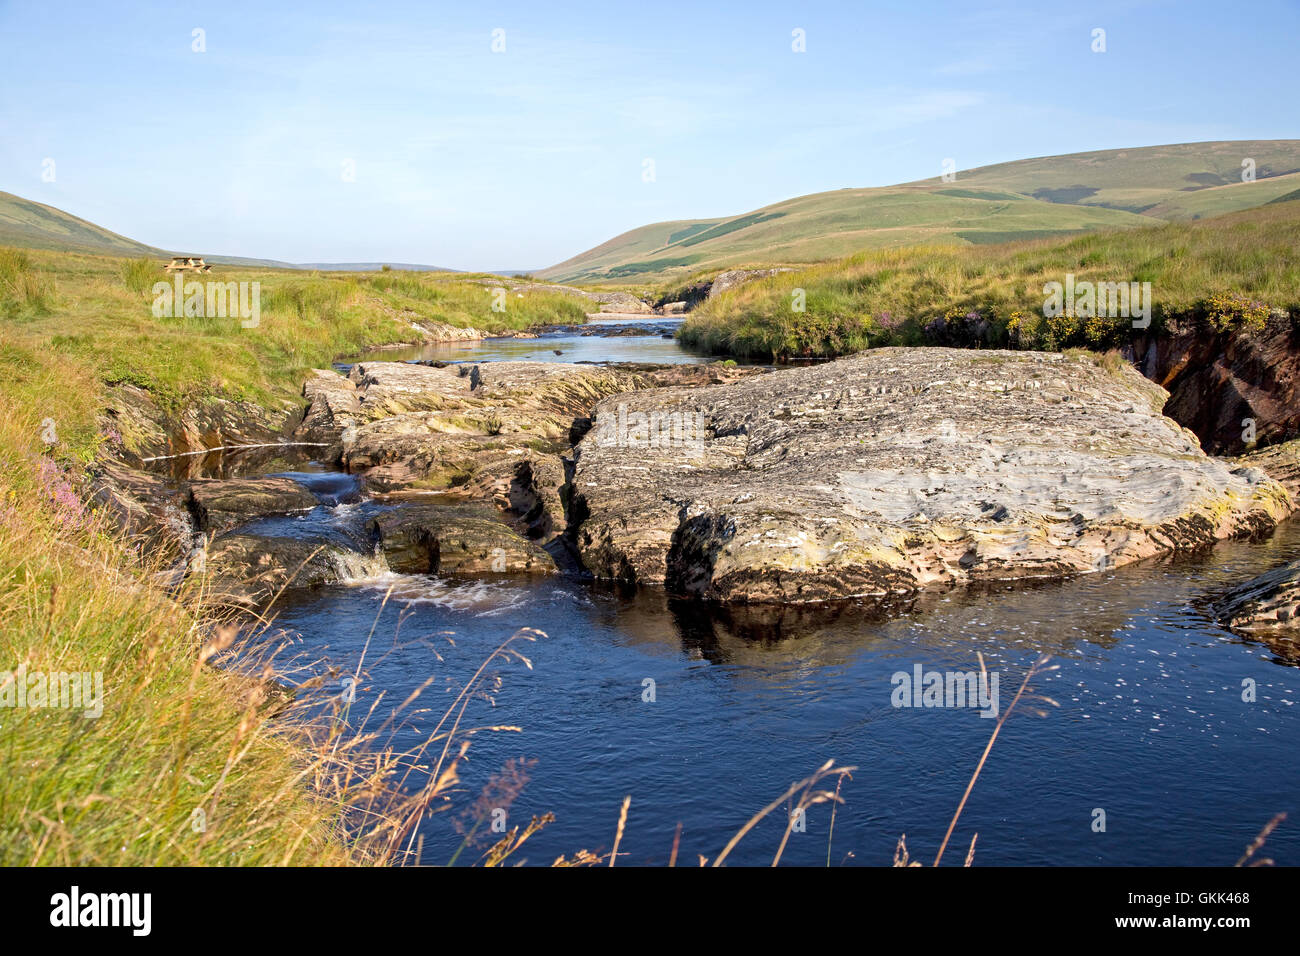 Afon Elan rivière qui coule à travers les roches sédimentaires dans la région de Cambrian mountains près de Blaenycwn Powys Pays de Galles Banque D'Images